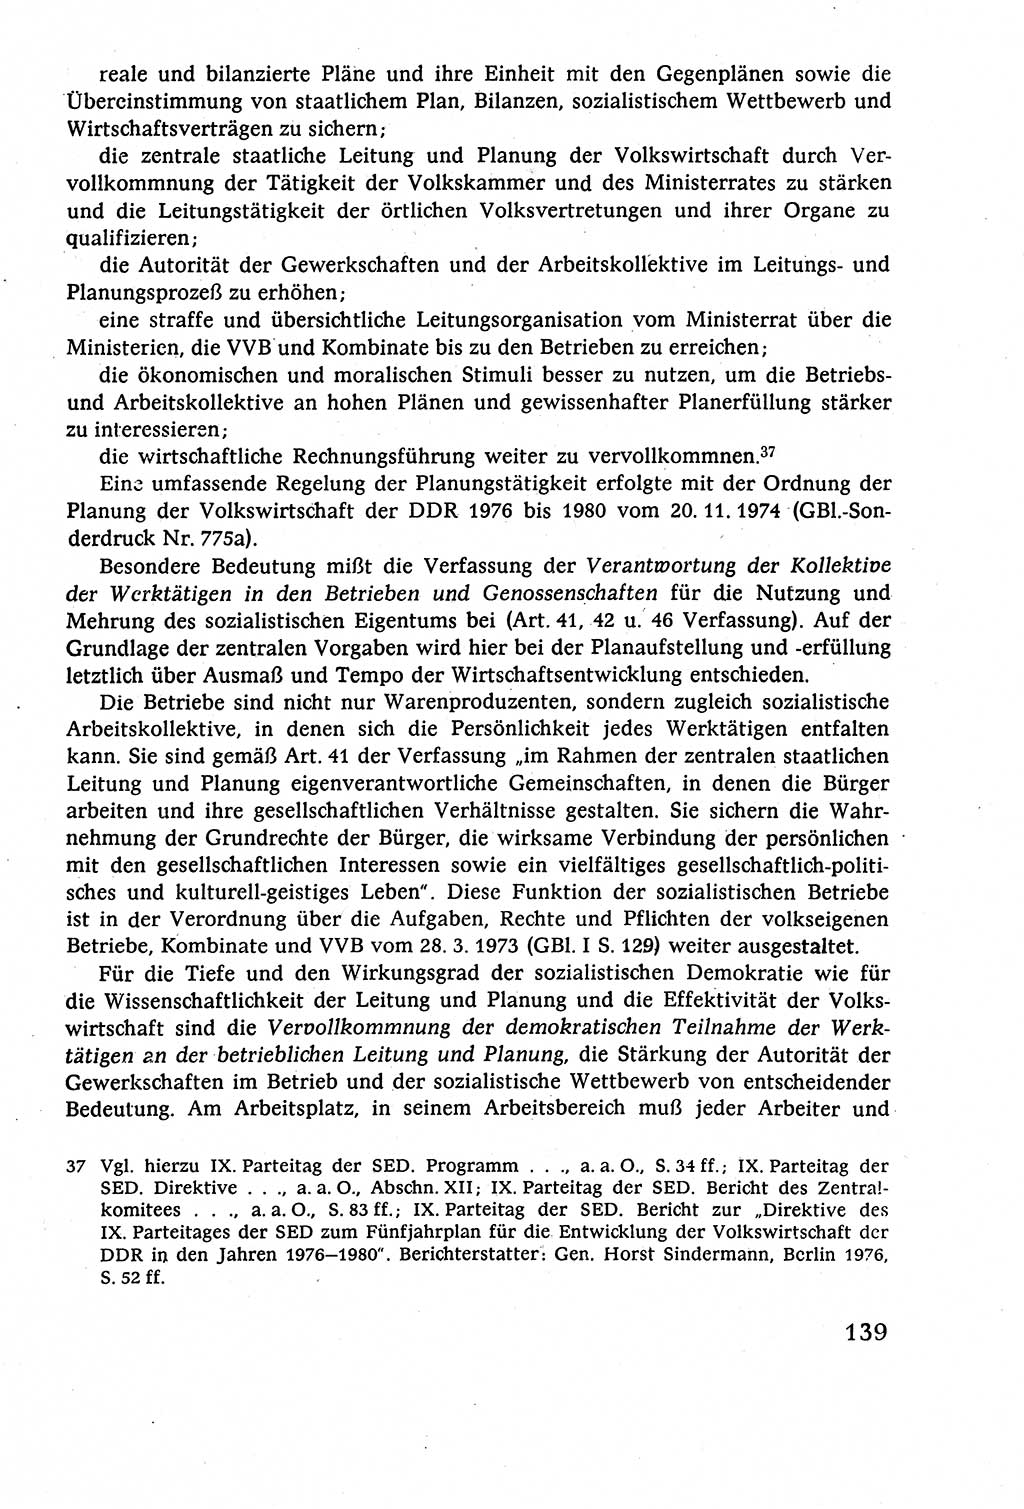 Staatsrecht der DDR (Deutsche Demokratische Republik), Lehrbuch 1977, Seite 139 (St.-R. DDR Lb. 1977, S. 139)